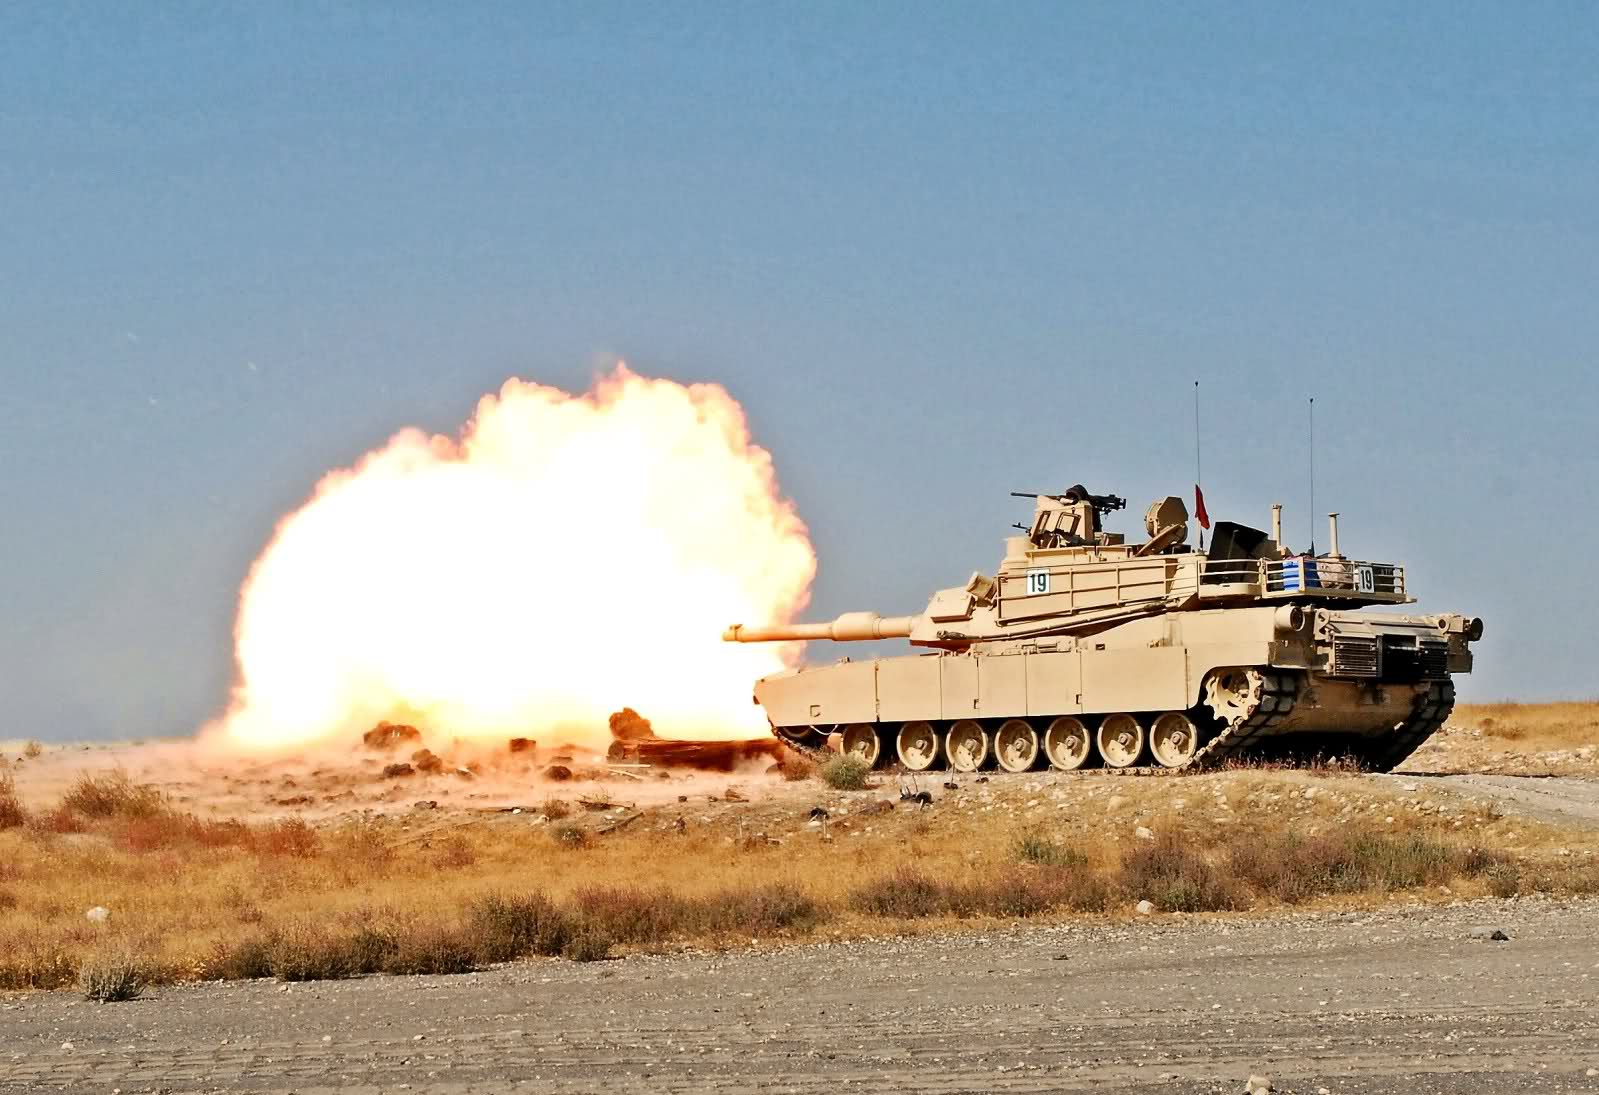 Vũ khí chính của xe tăng M1A2 là pháo nòng trơn M256 cỡ nòng 120 mm